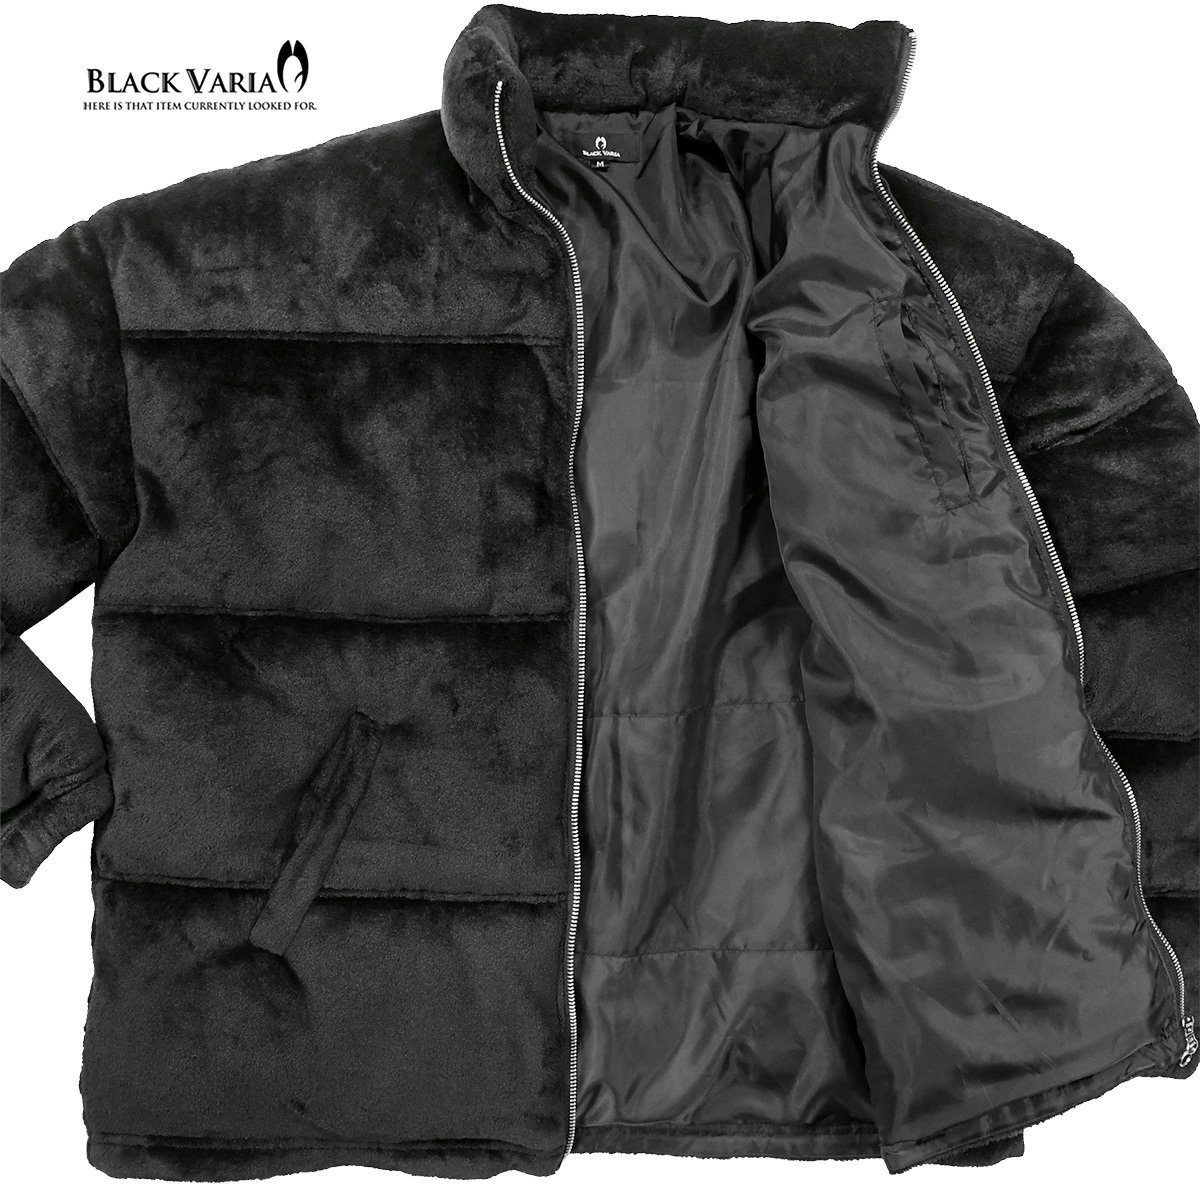 424007-20 BlackVaria ファーブルゾン 中綿ジャケット オーバーサイズ 無地 アウター パデッドジャケット メンズ(ブラック黒) XL ゆったり_画像6